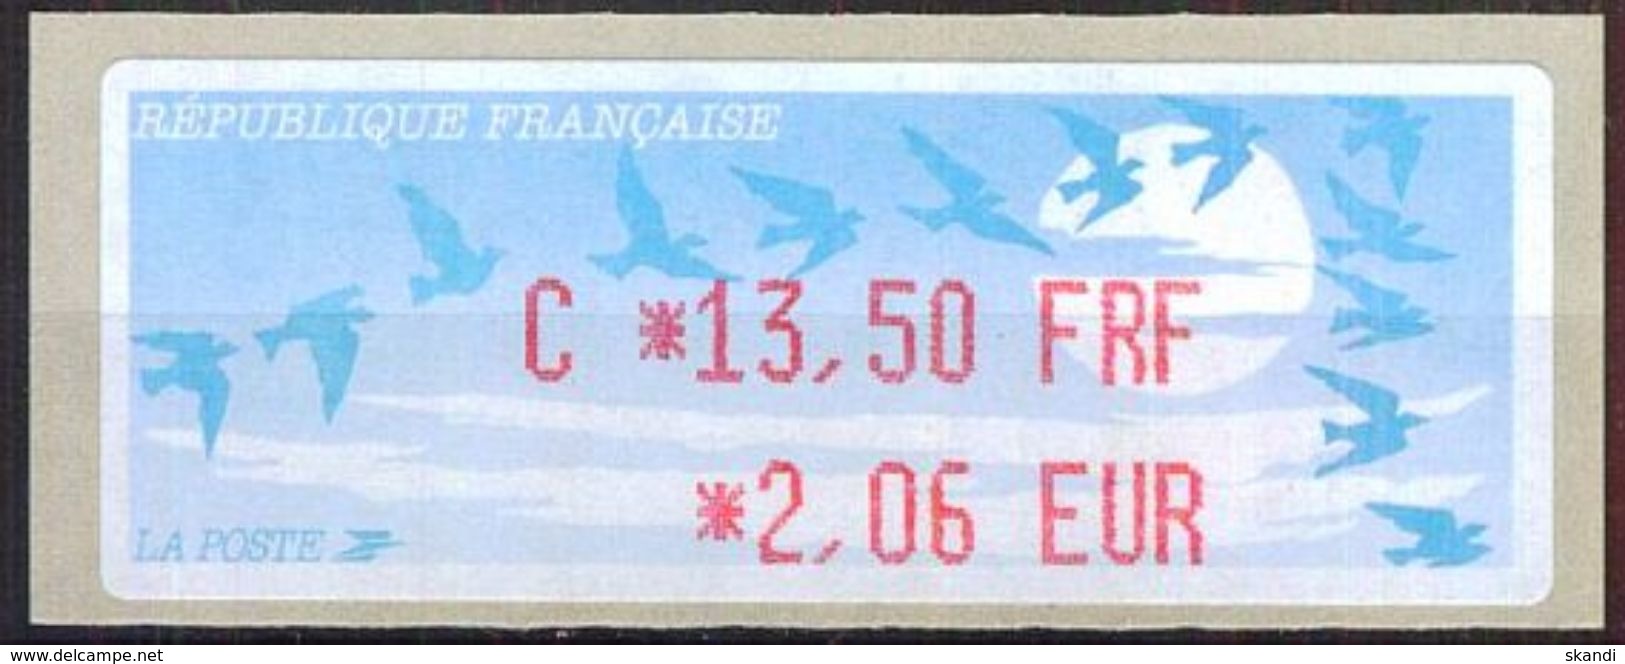 FRANKREICH 1999 Mi-Nr. ATM 13.1.1 B Z4 AUTOMATENMARKE ** MNH - 1990 « Oiseaux De Jubert »